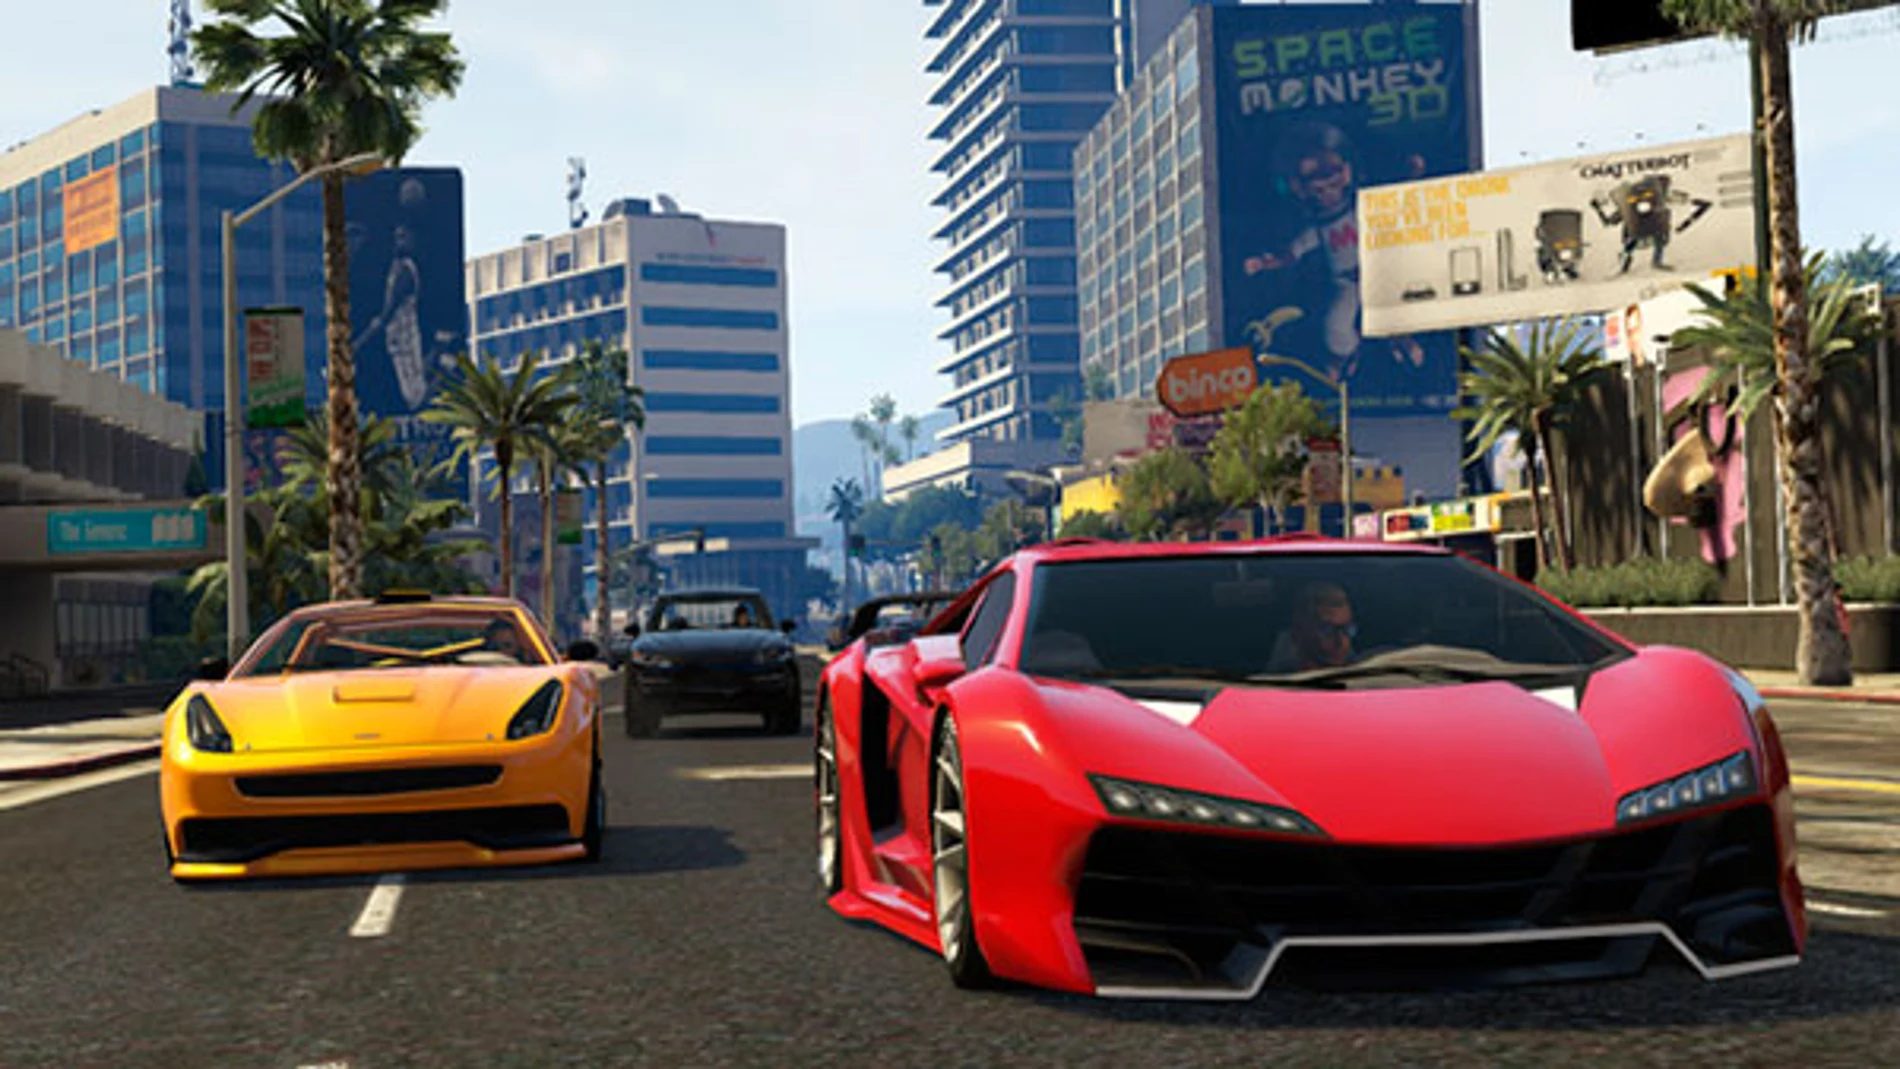 Rockstar detalla las próximas actualizaciones para Grand Theft Auto Online